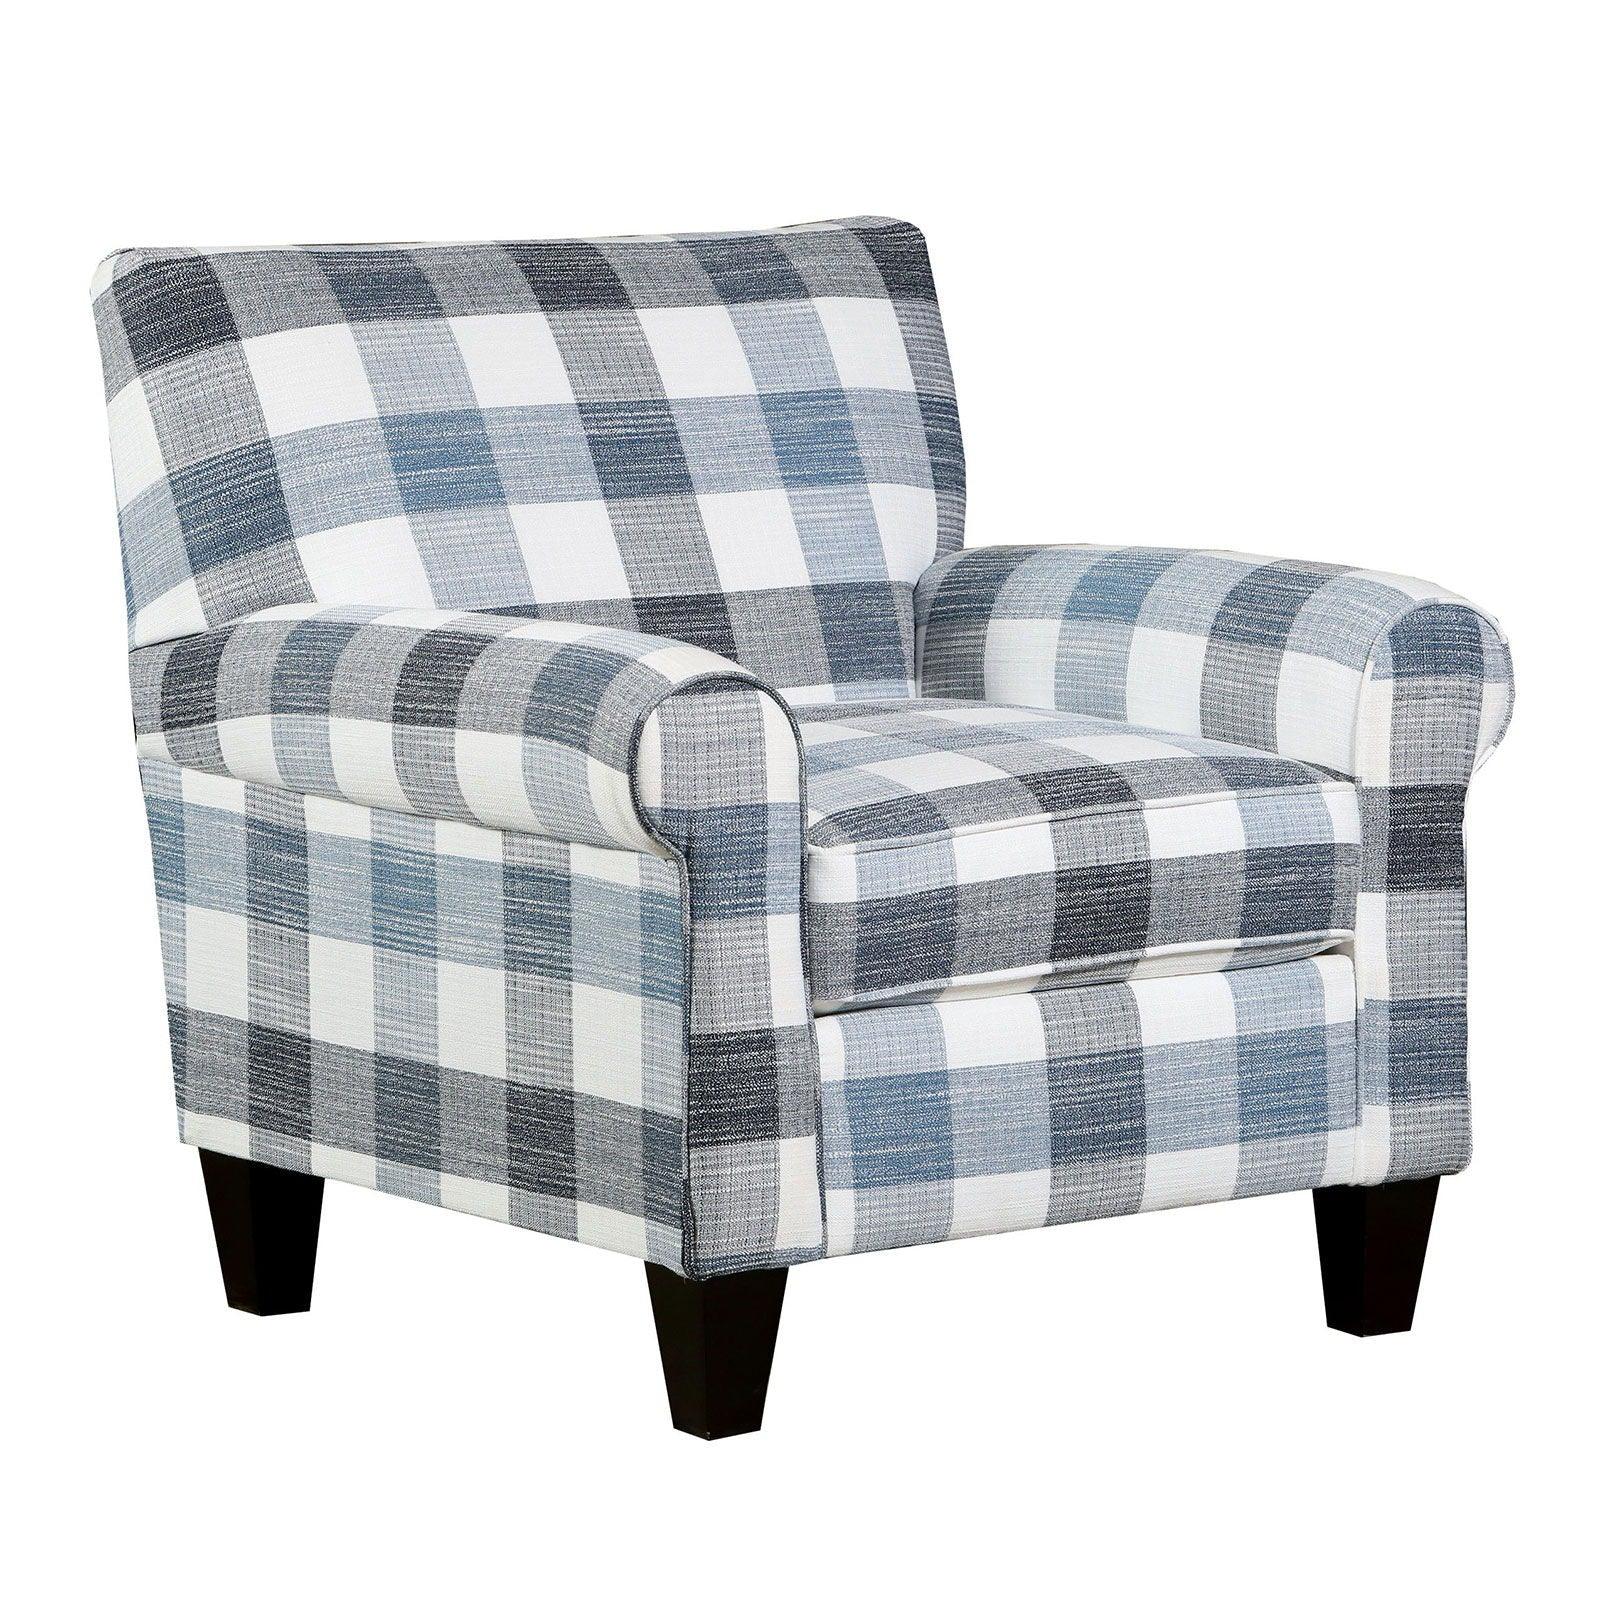 Furniture of America - Aberporth - Chair - Multi - 5th Avenue Furniture